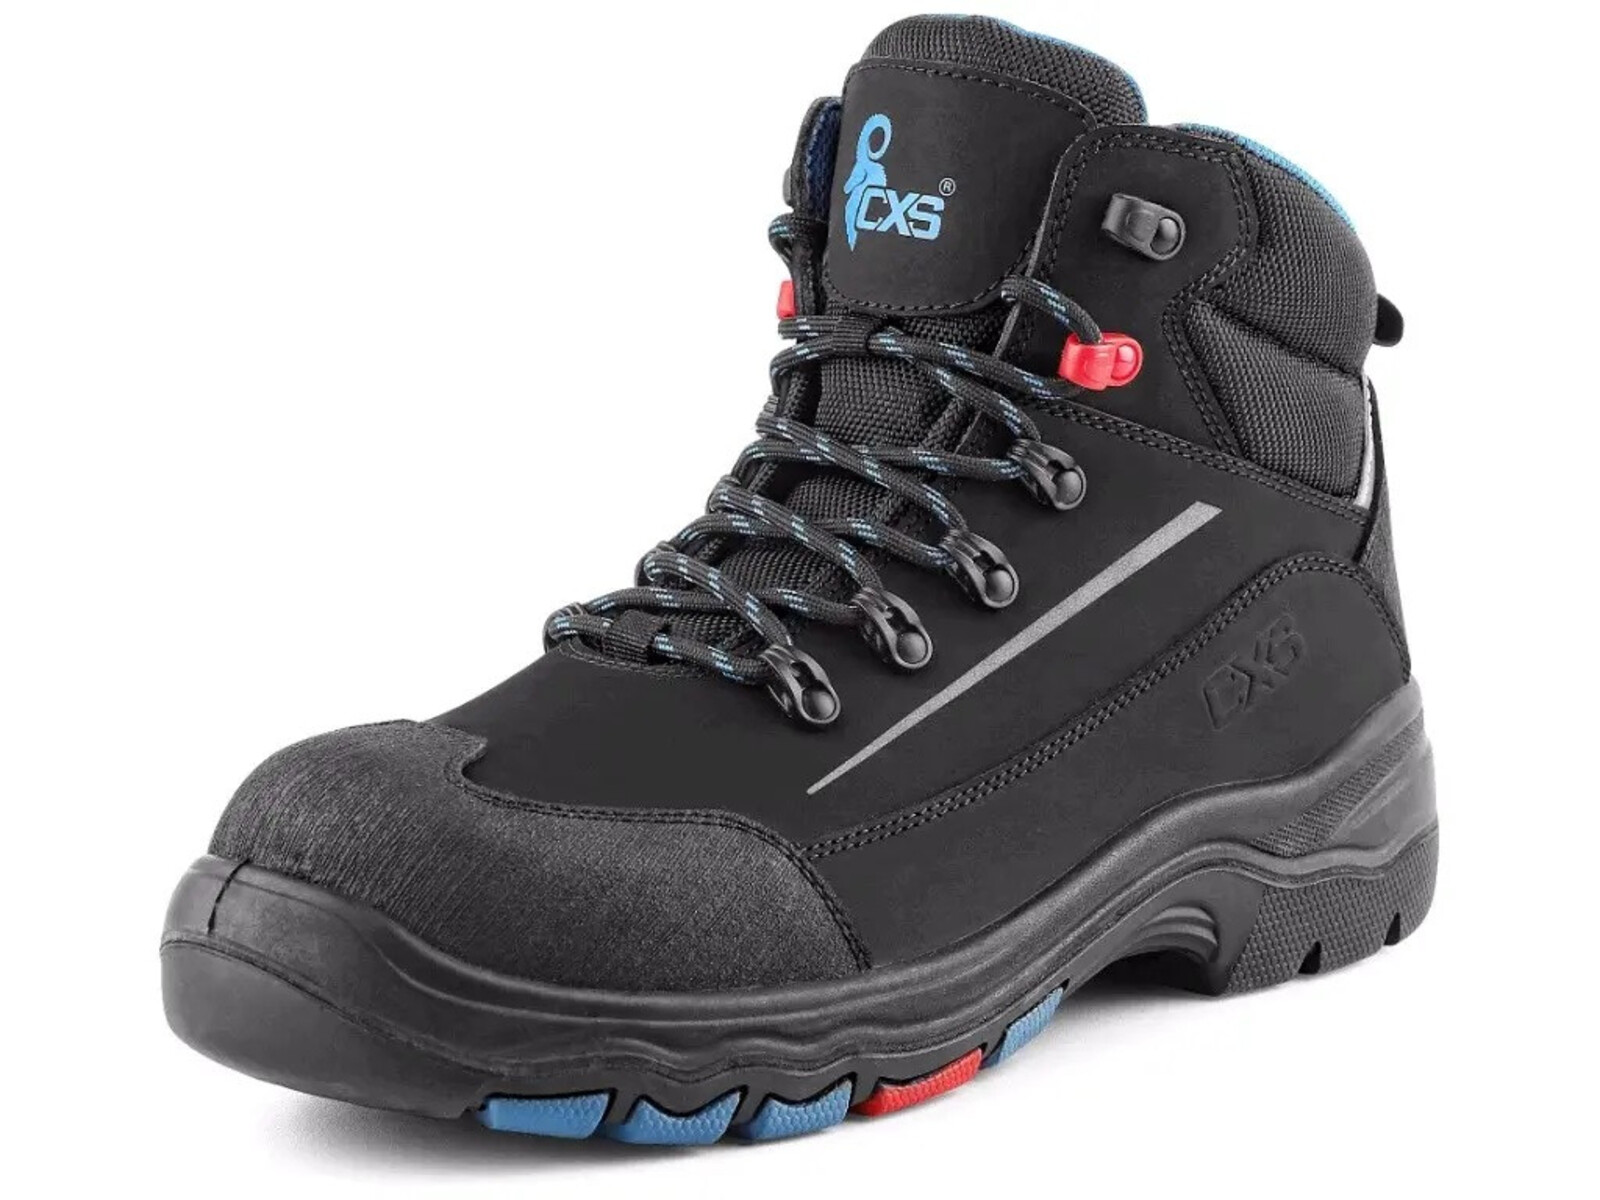 Bezpečnostná členková obuv CXS Land Senja S3S FO HRO SC SR - veľkosť: 42, farba: čierna/modrá